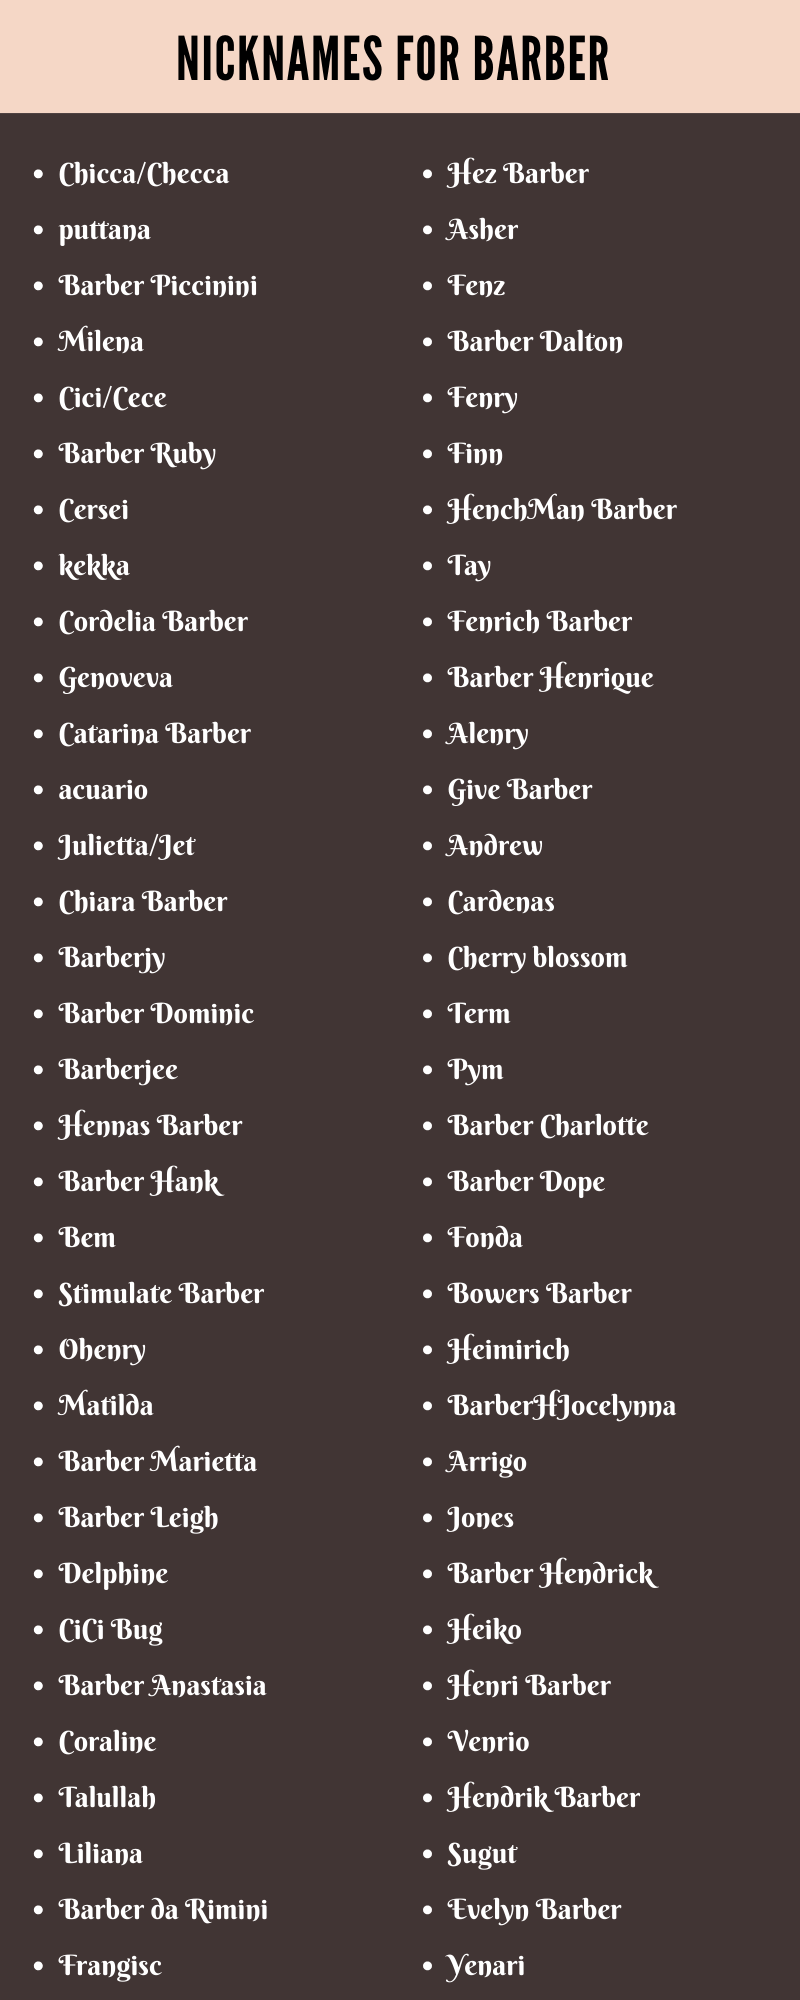 Nicknames For Barber